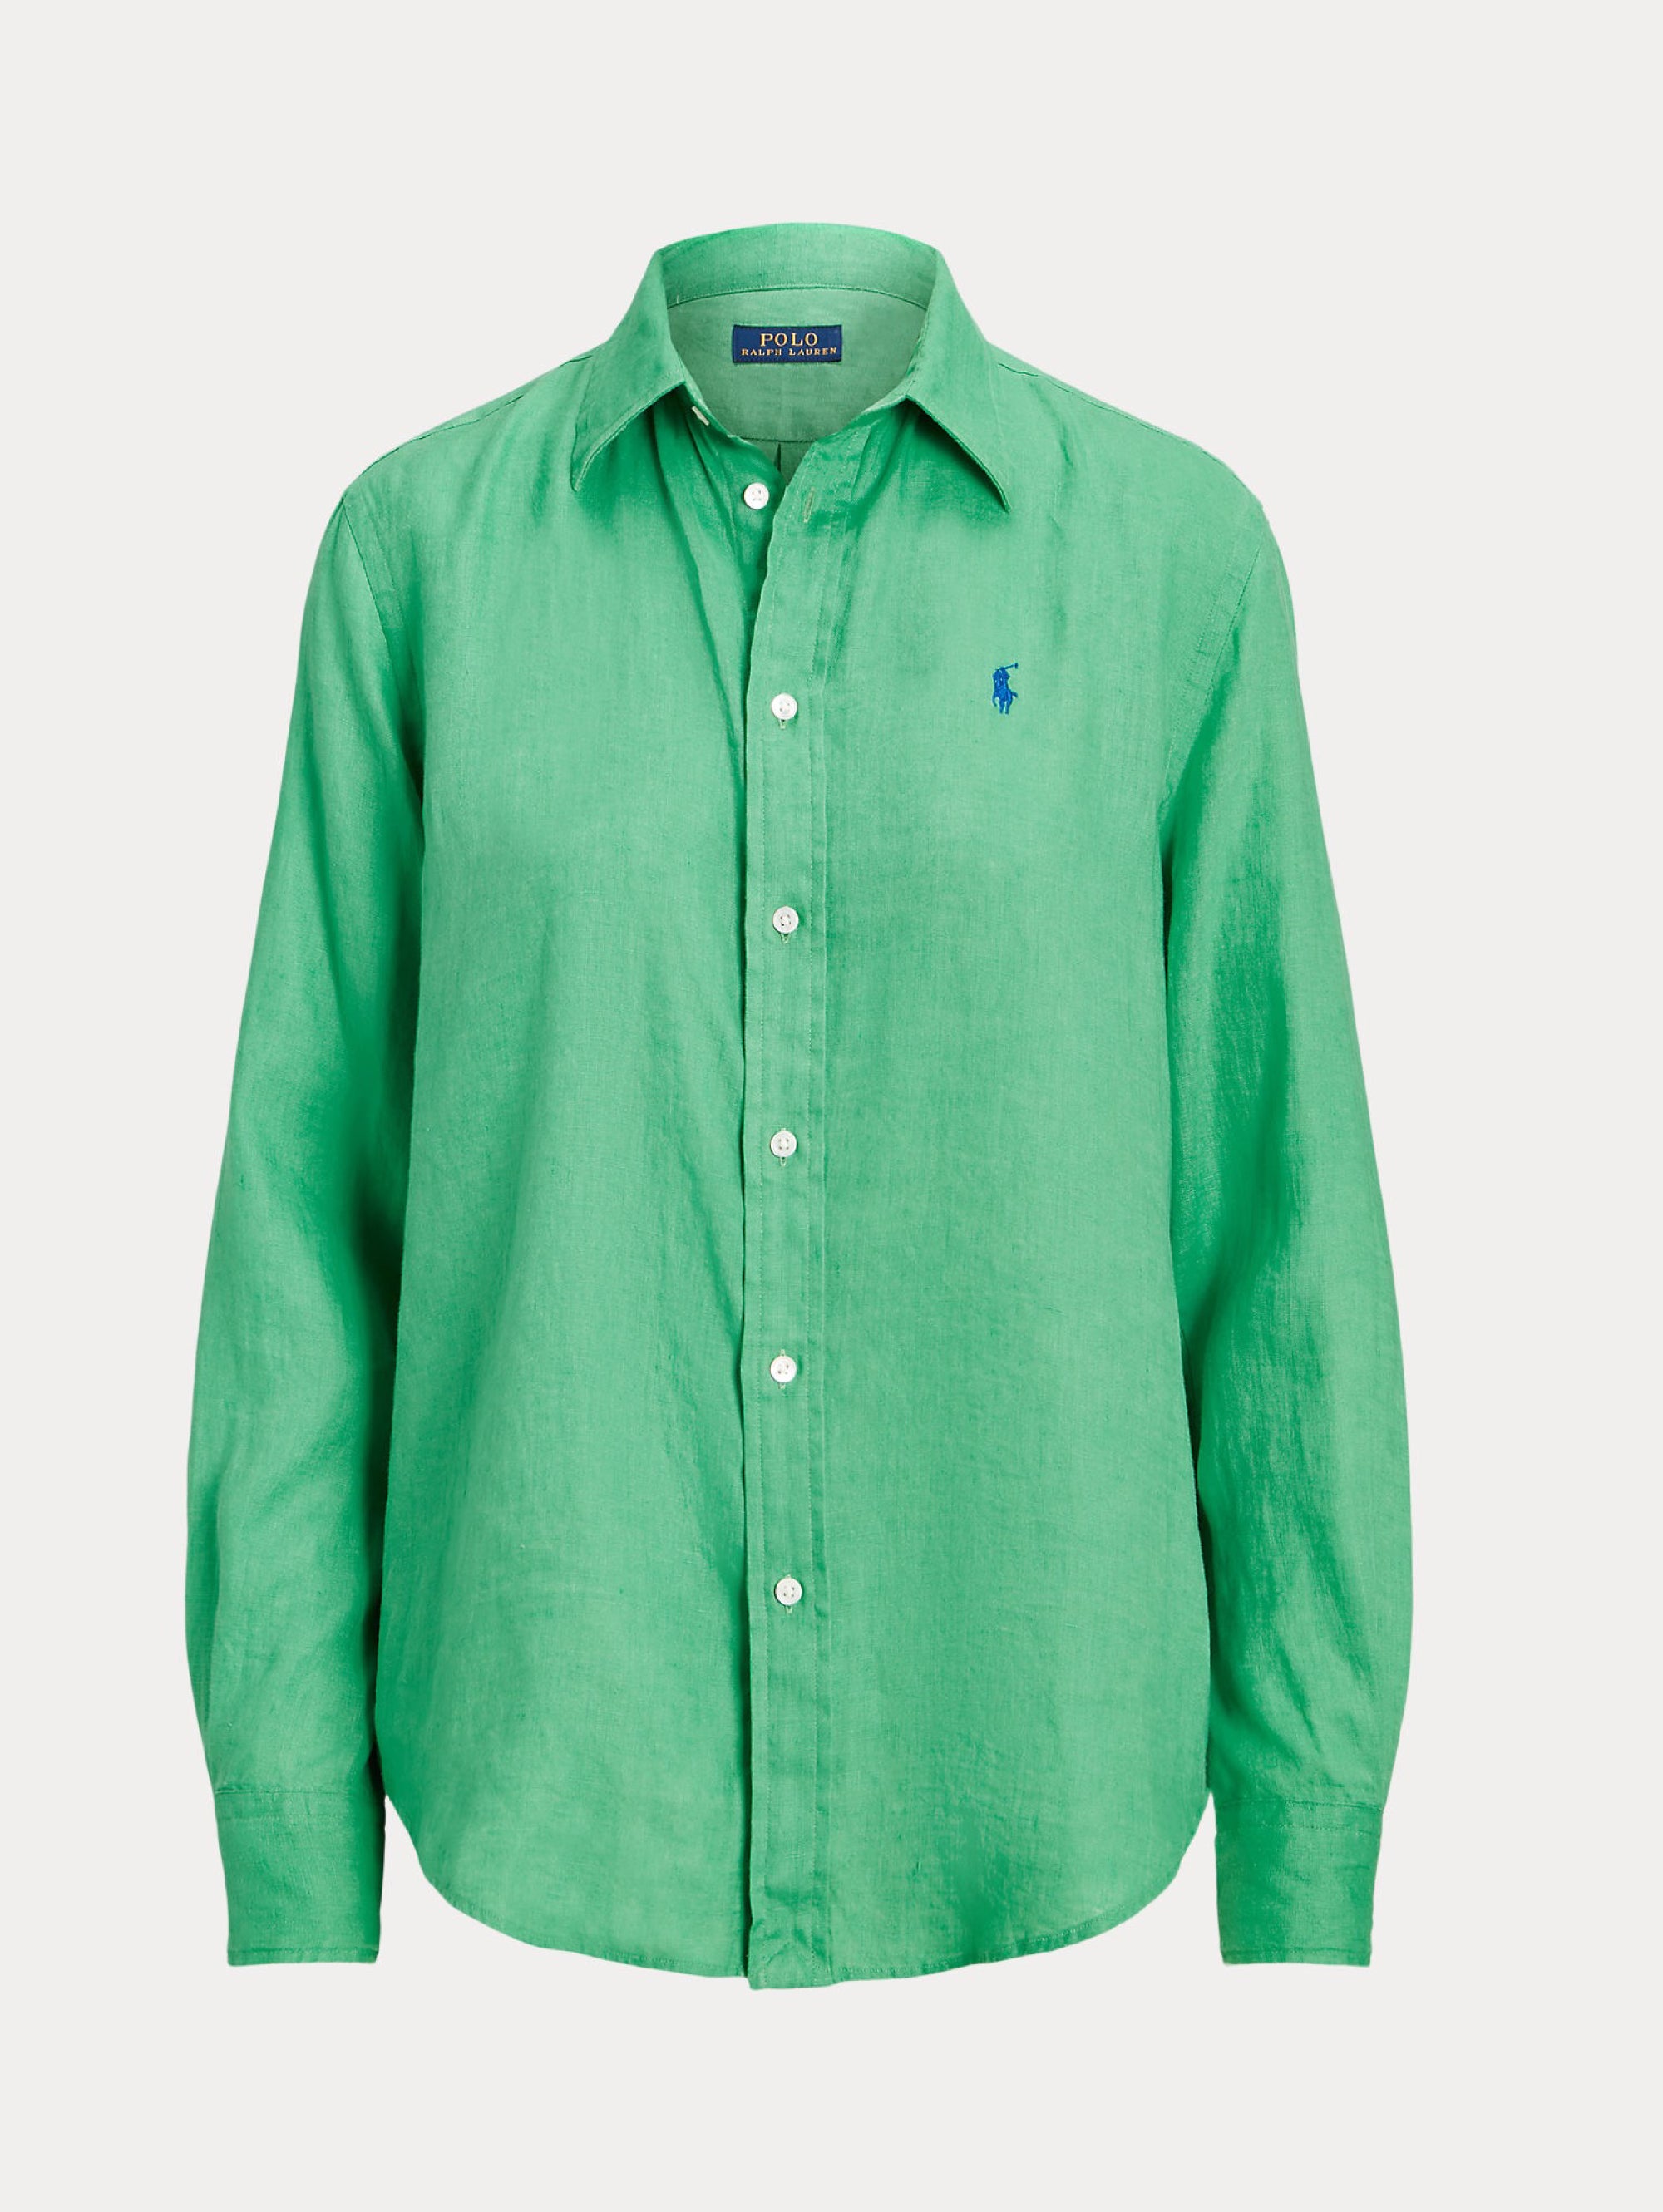 Over Green Linen Shirt